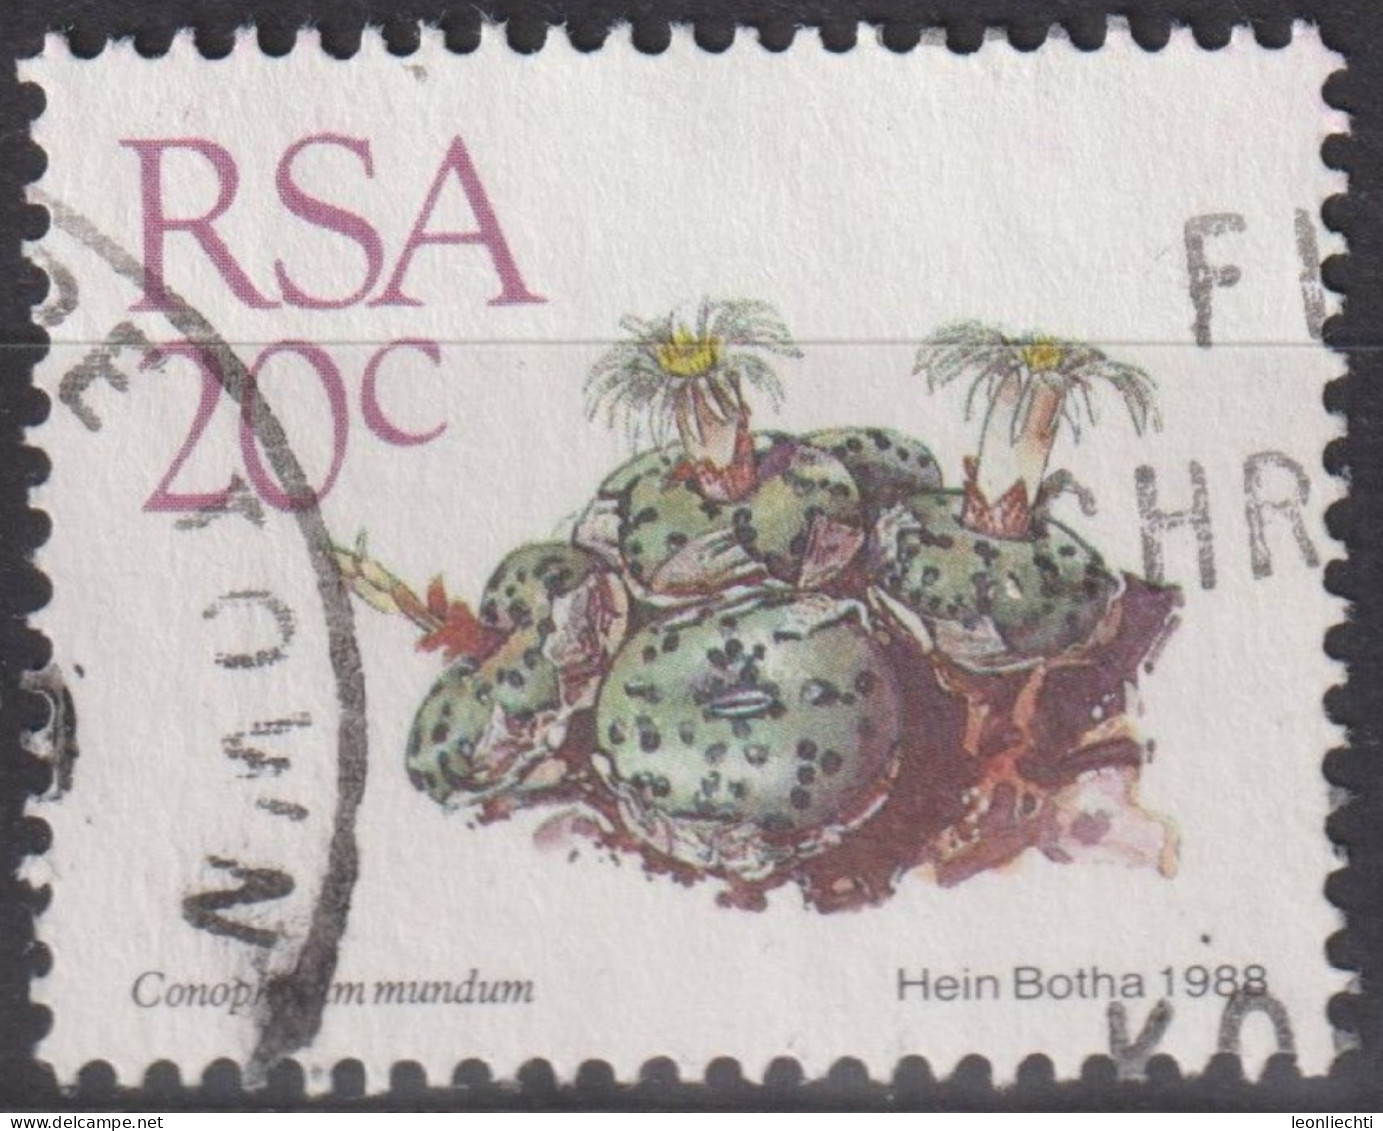 1988 RSA Südafrika ° Mi:ZA 749, Sn:ZA 742, Yt:ZA 666, Conophytum Mundum, Freimarken - Sukkulenten - Usati